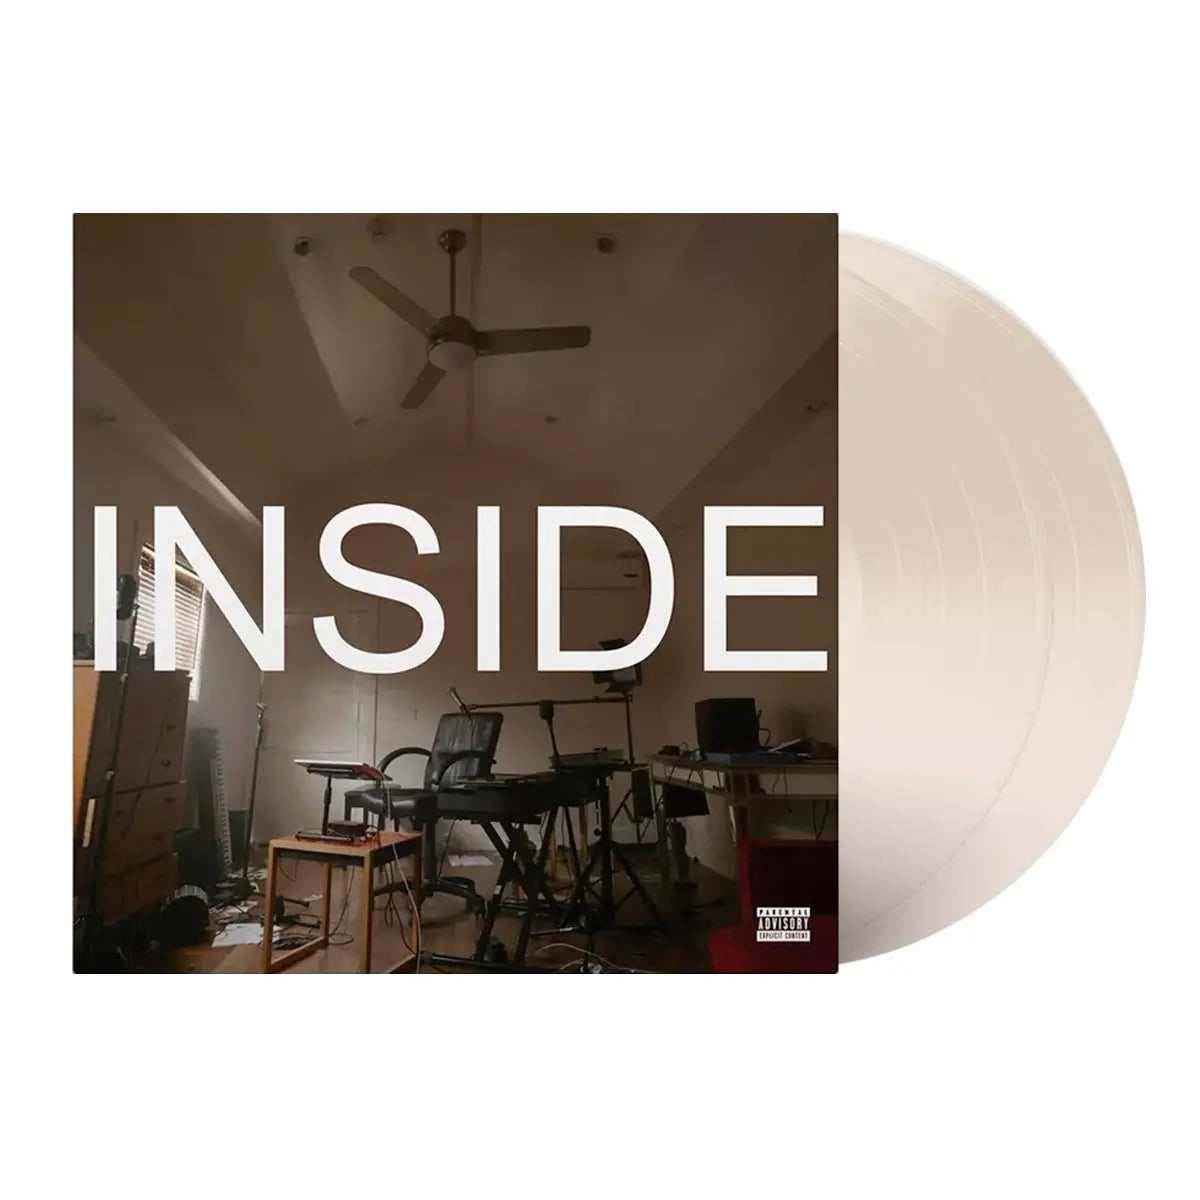 Bo Burnham's Inside Album on Eggshell White Variant Color Vinyl LP Record